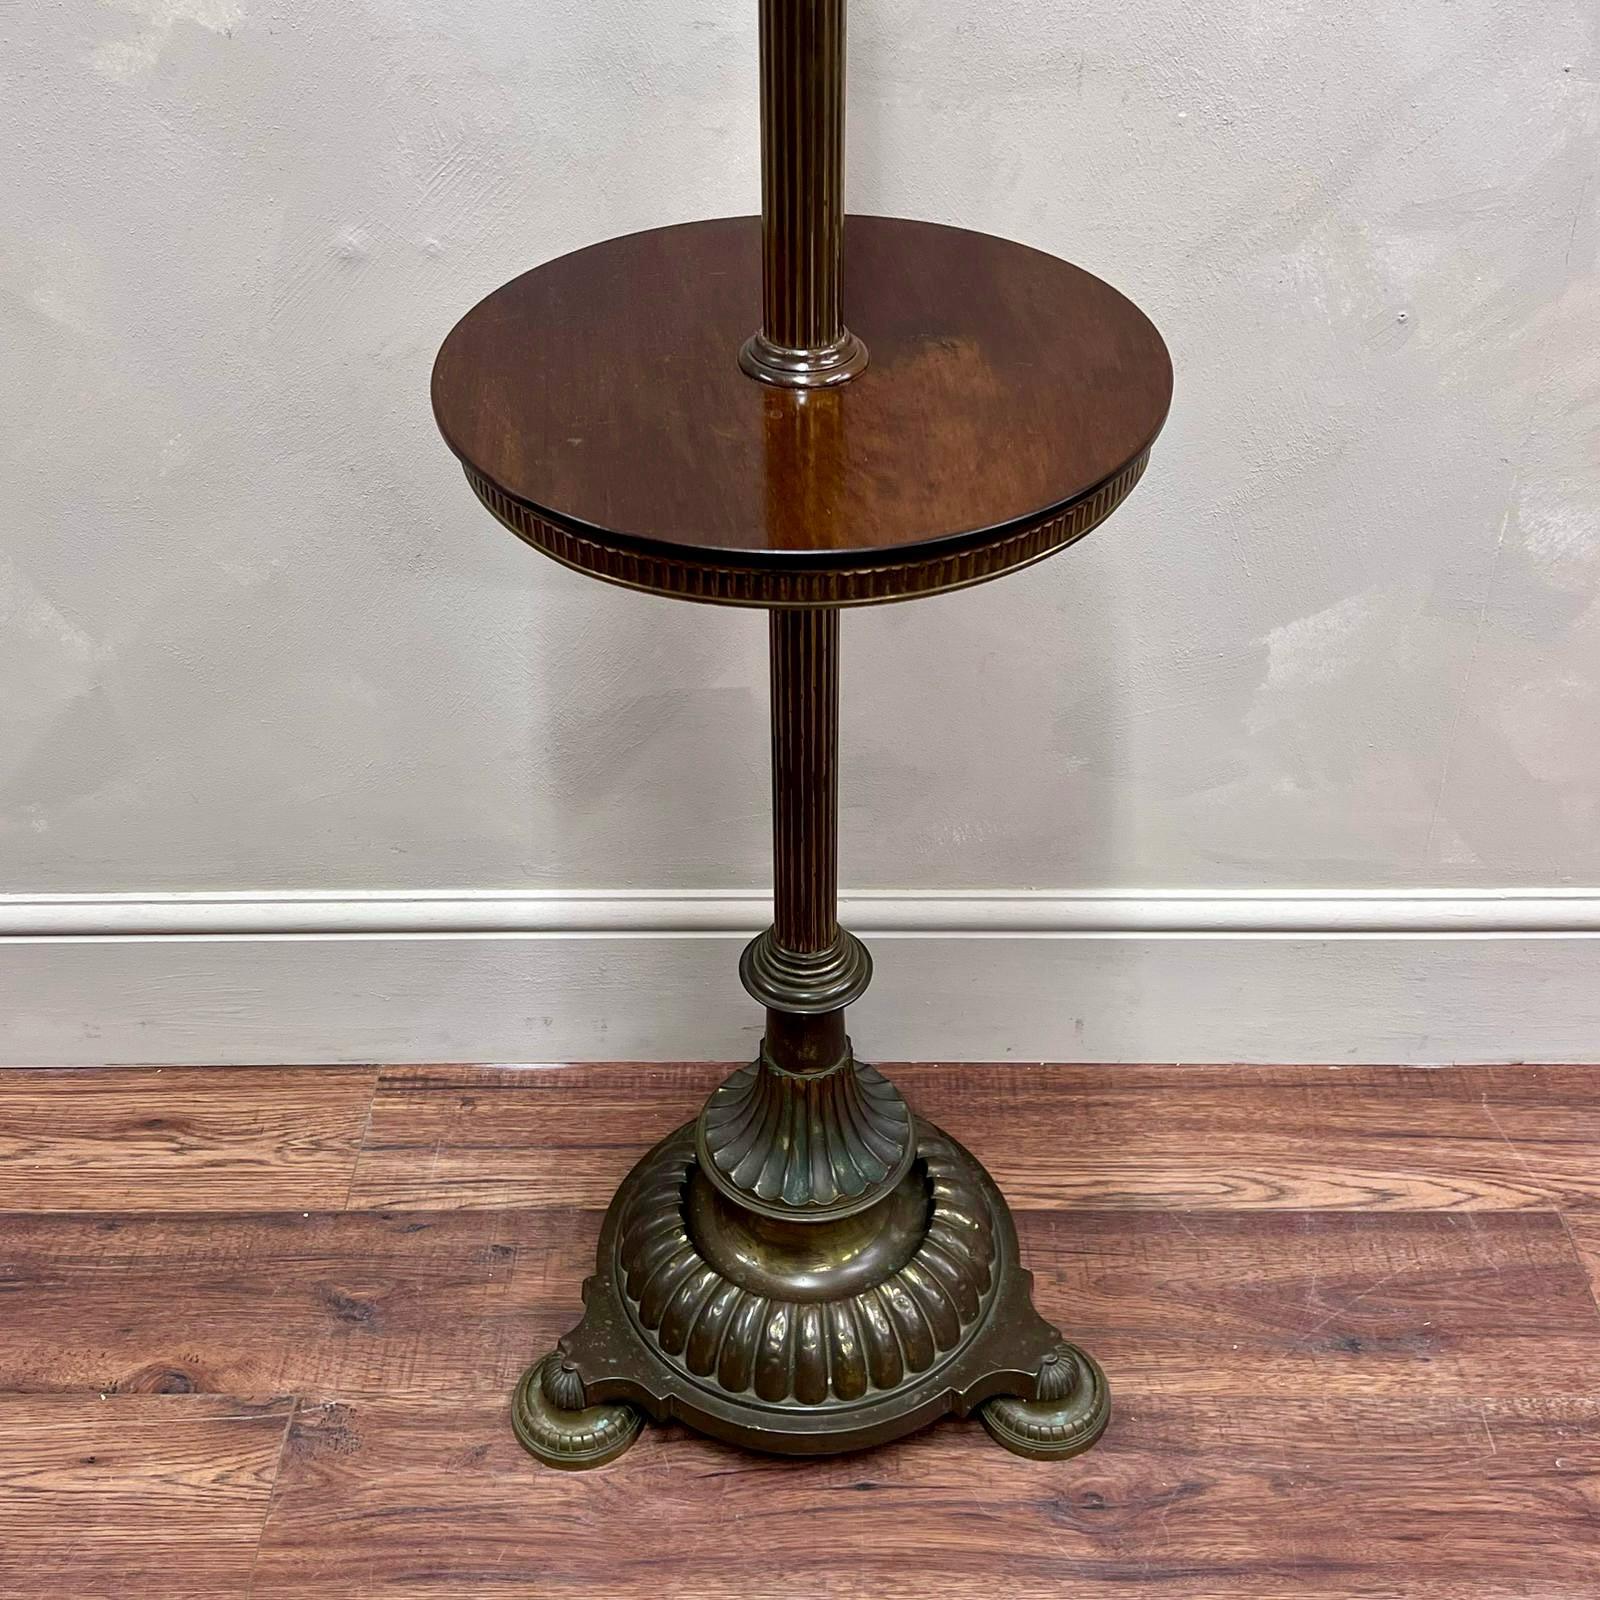 Lampadaire en laiton du 19e siècle avec une table d'appoint en acajou poli très utile, parfaite pour être placée à côté d'une chaise, comme illustré.
Magnifiques détails, base solide.
Entièrement câblé et testé, nous pouvons modifier le câblage pour